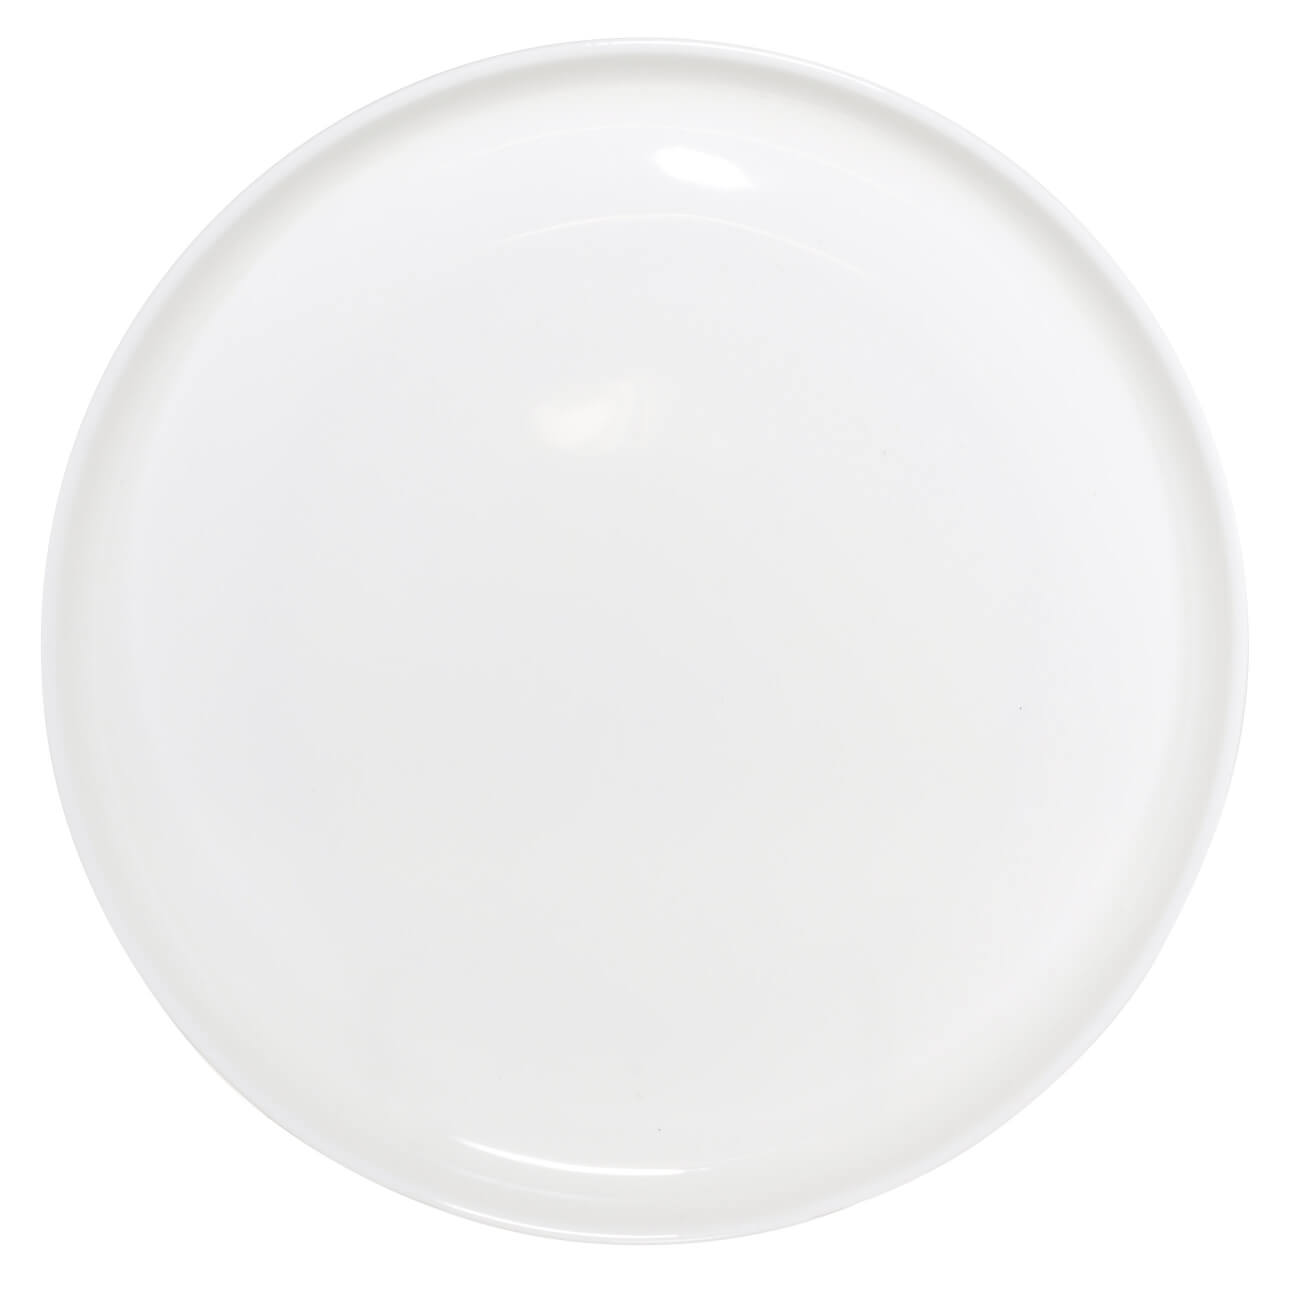 Тарелка обеденная, 26 см, фарфор F, белая, Ideal white тарелка обеденная luminarc нью карин l9817 26см